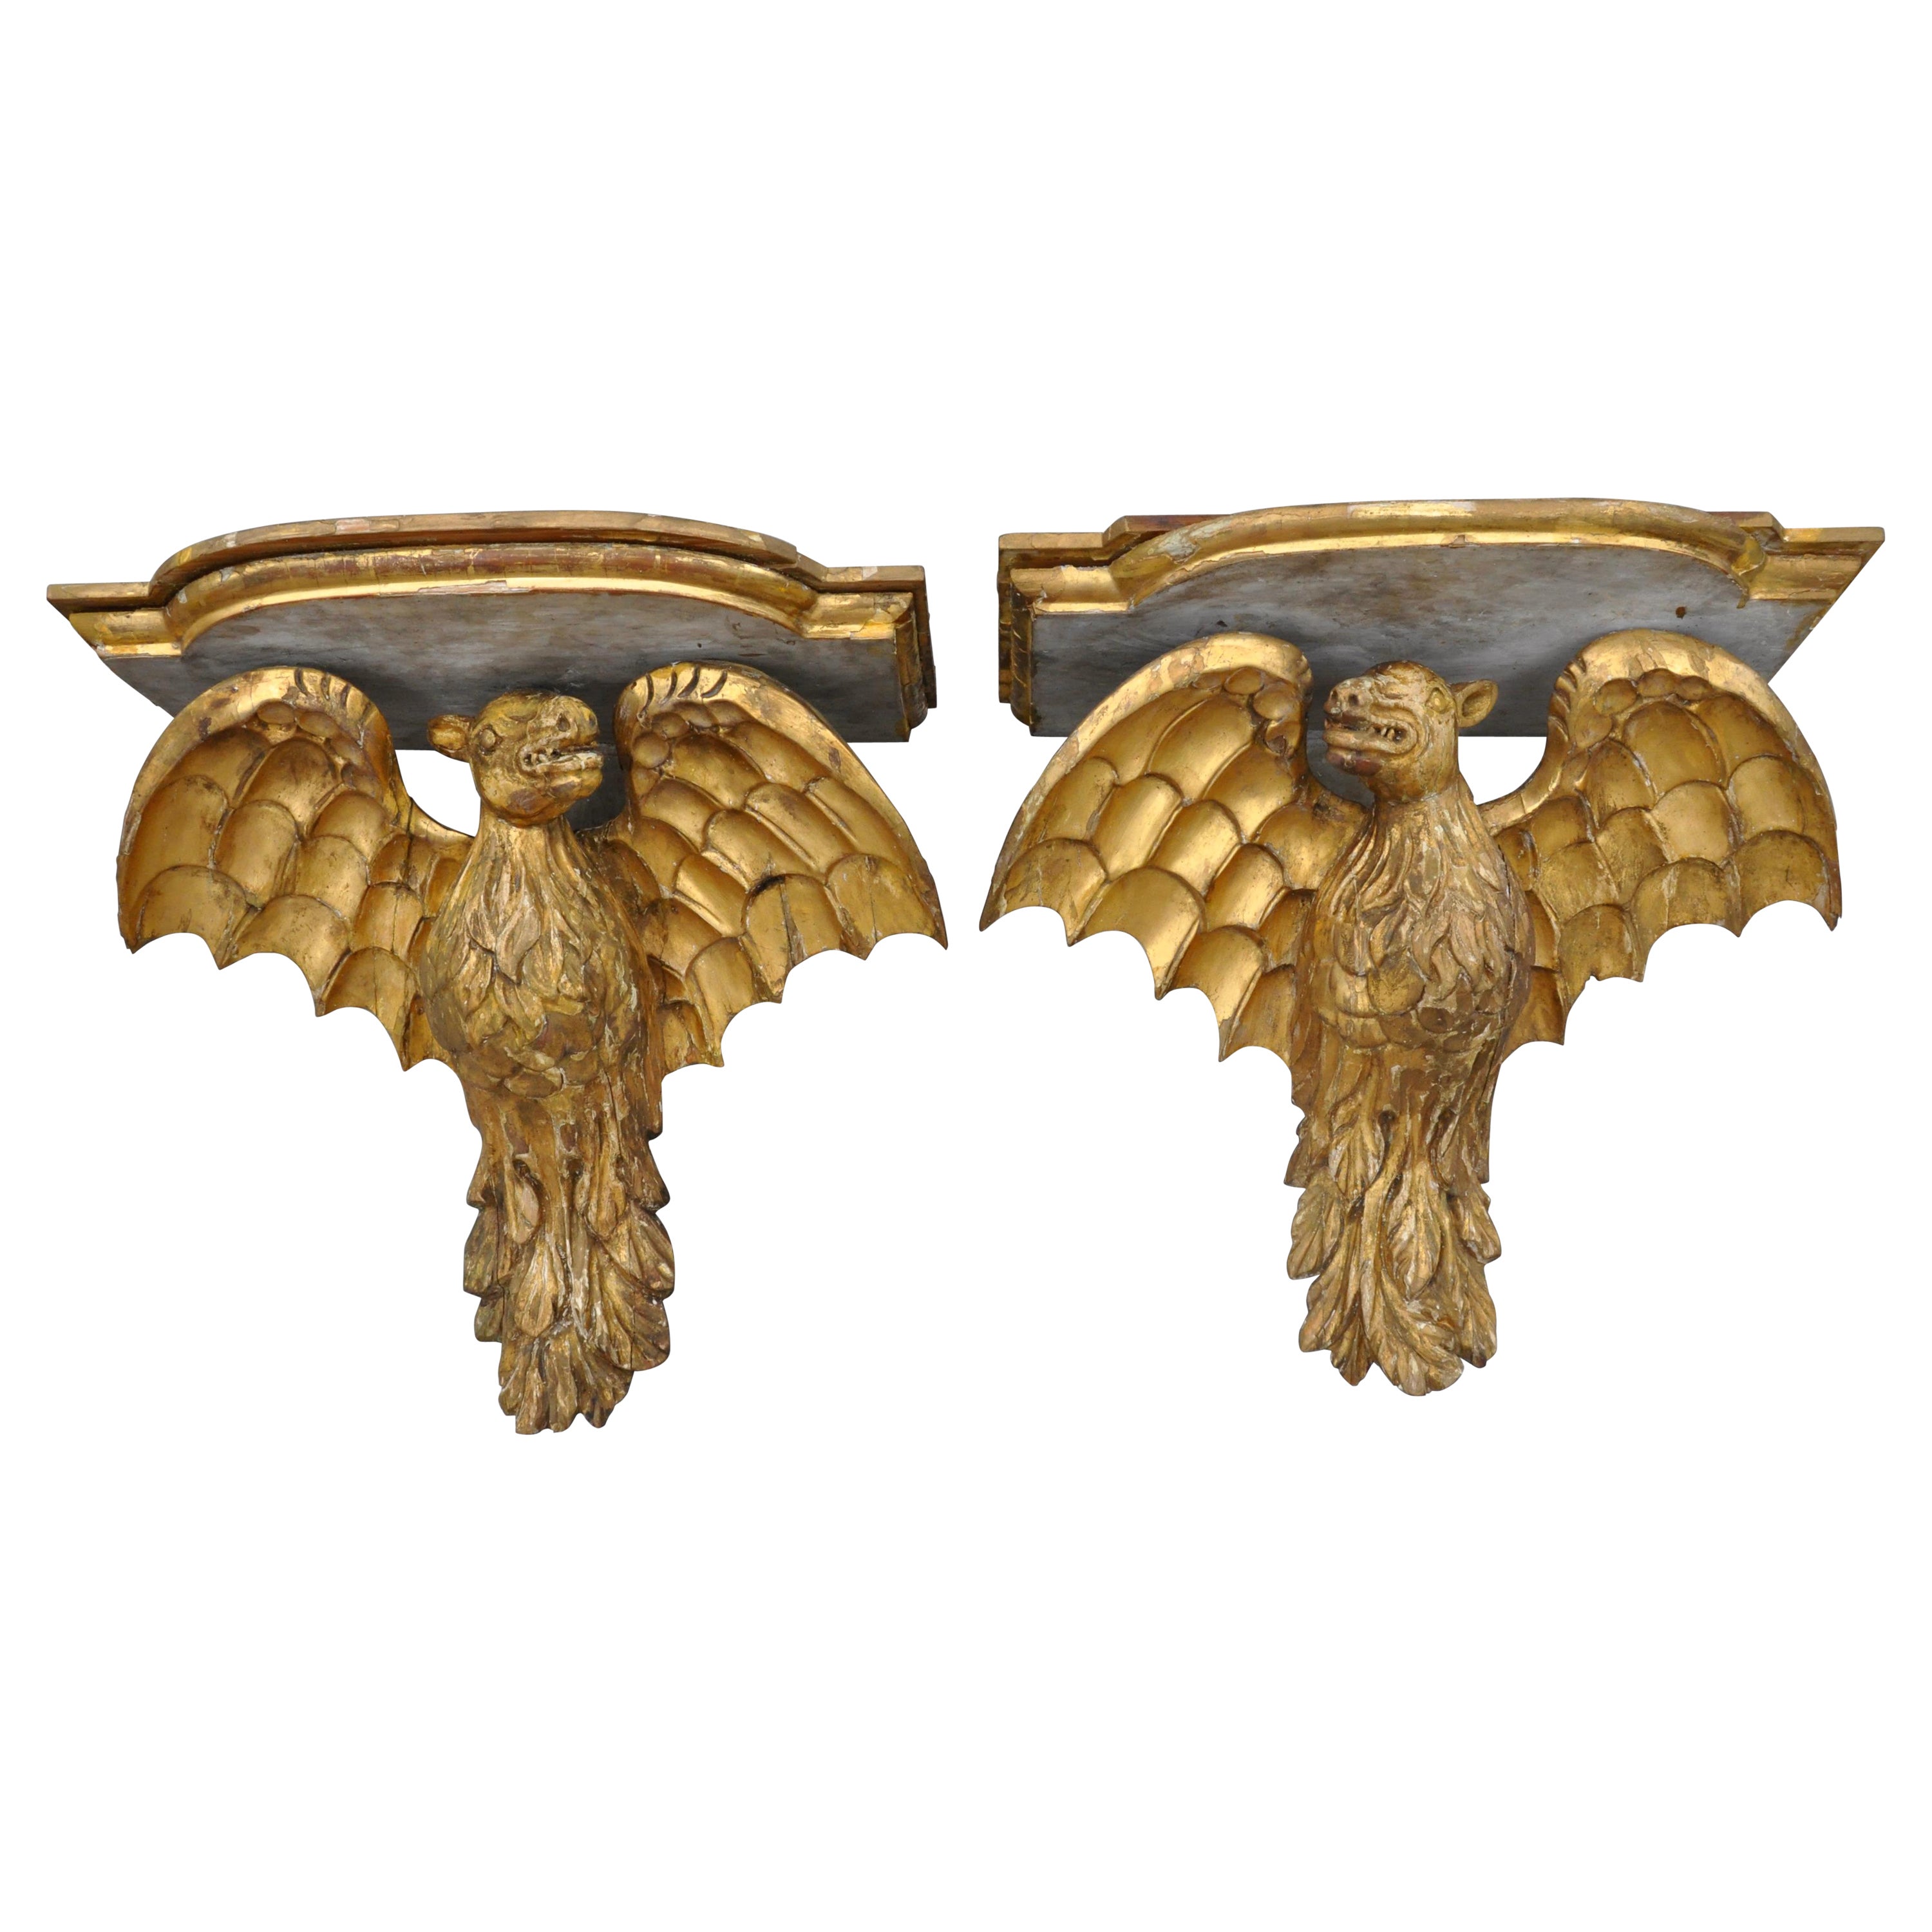 Paire de supports muraux en bois doré italien du 19ème siècle en forme de chauve-souris